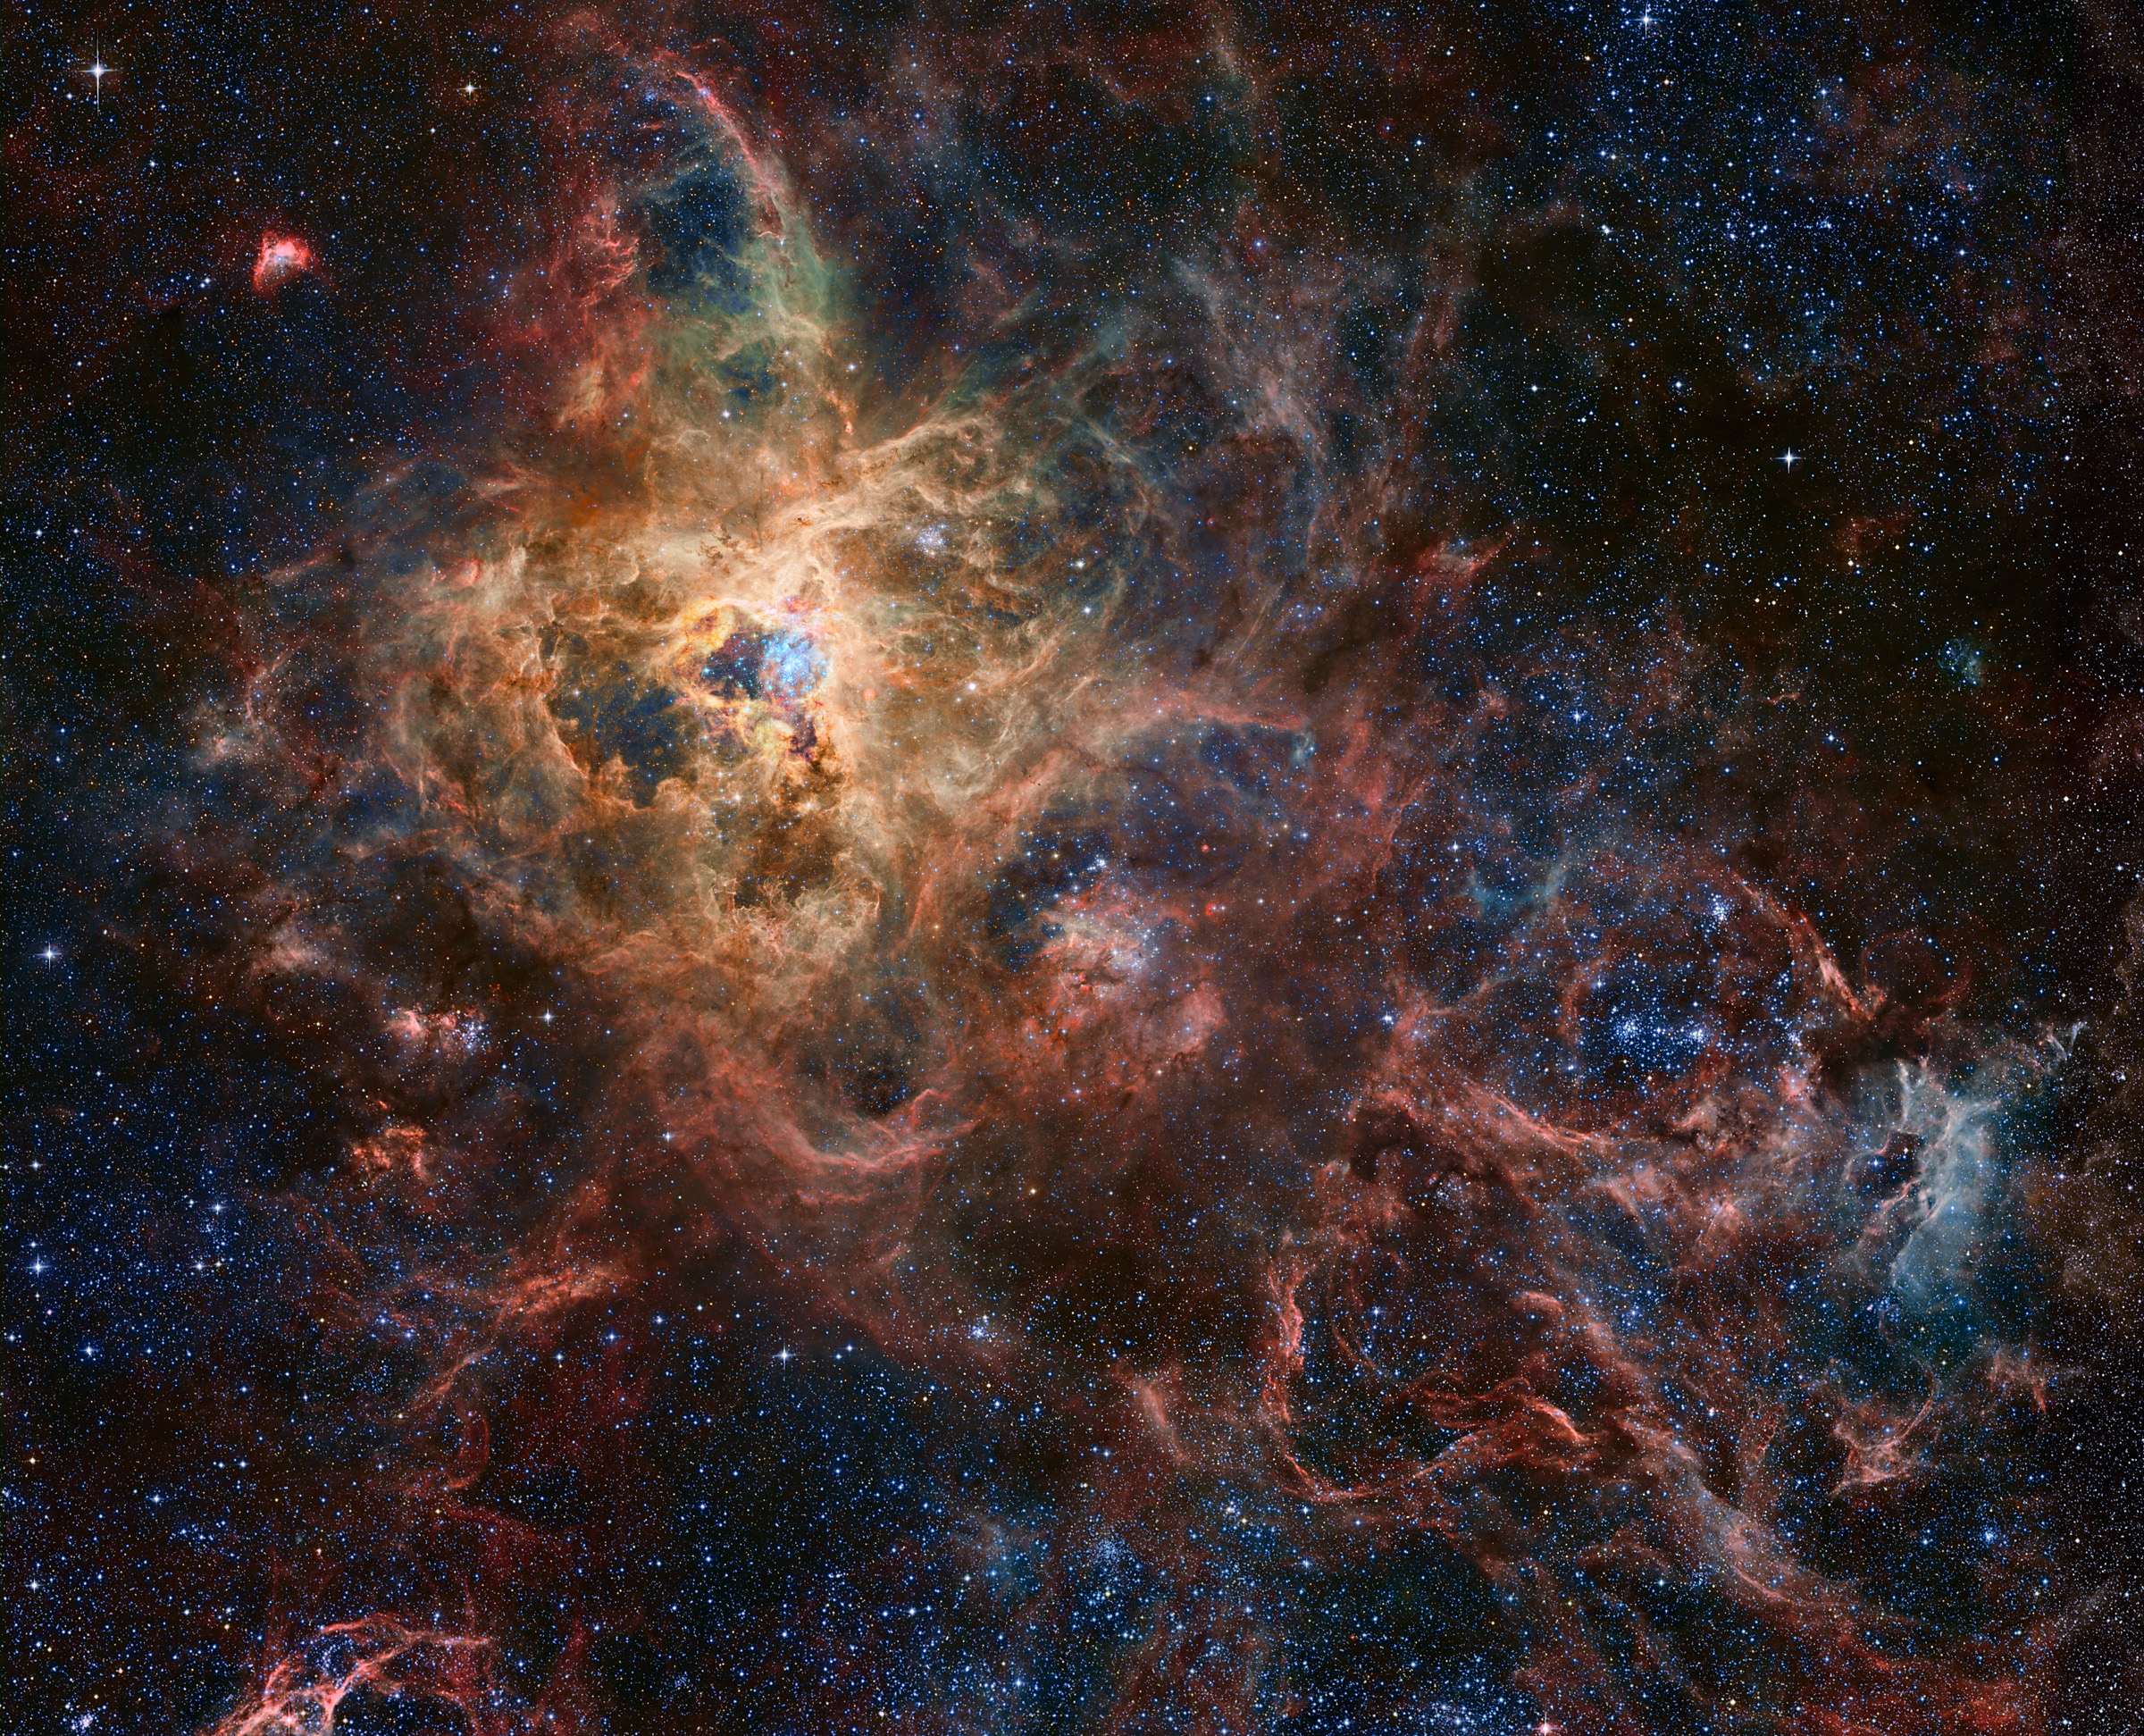 APOD: 2016 February 26 - The Tarantula Nebula